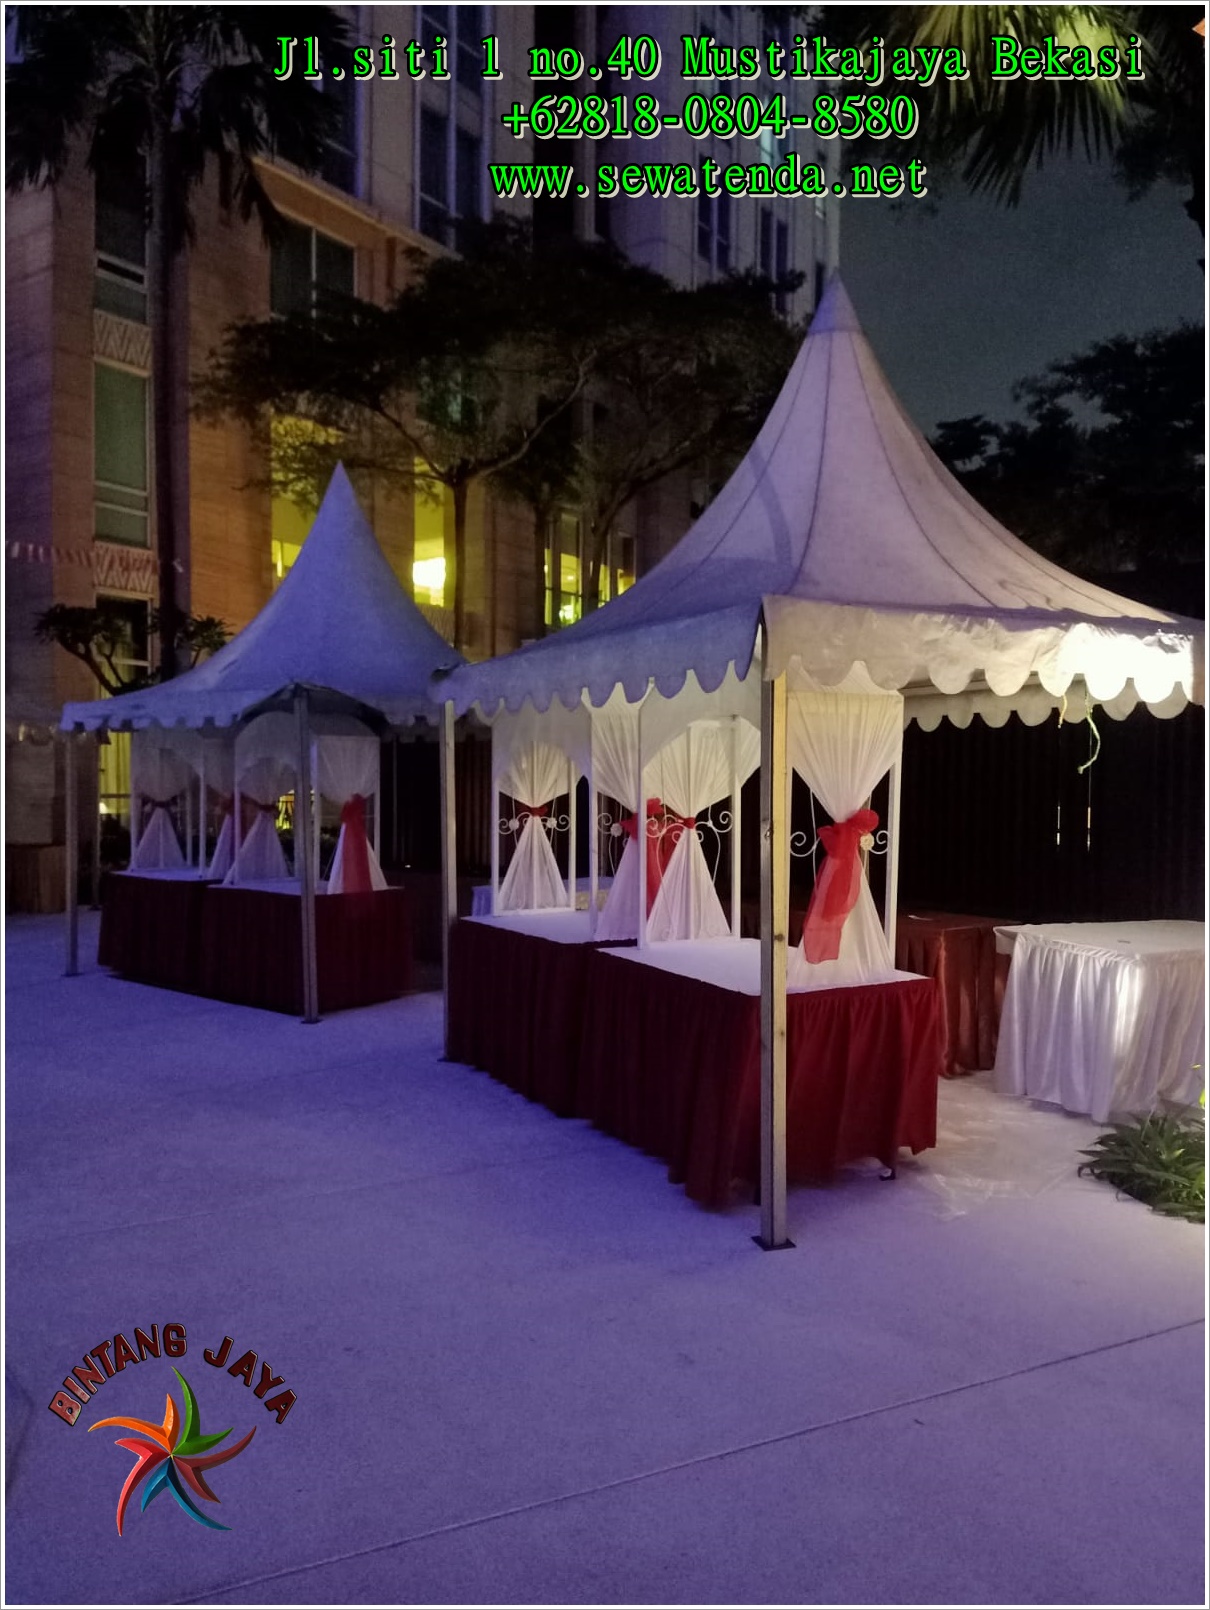 Sewa Tenda Kerucut Gubukan Tema Merah Putih Di Jakarta